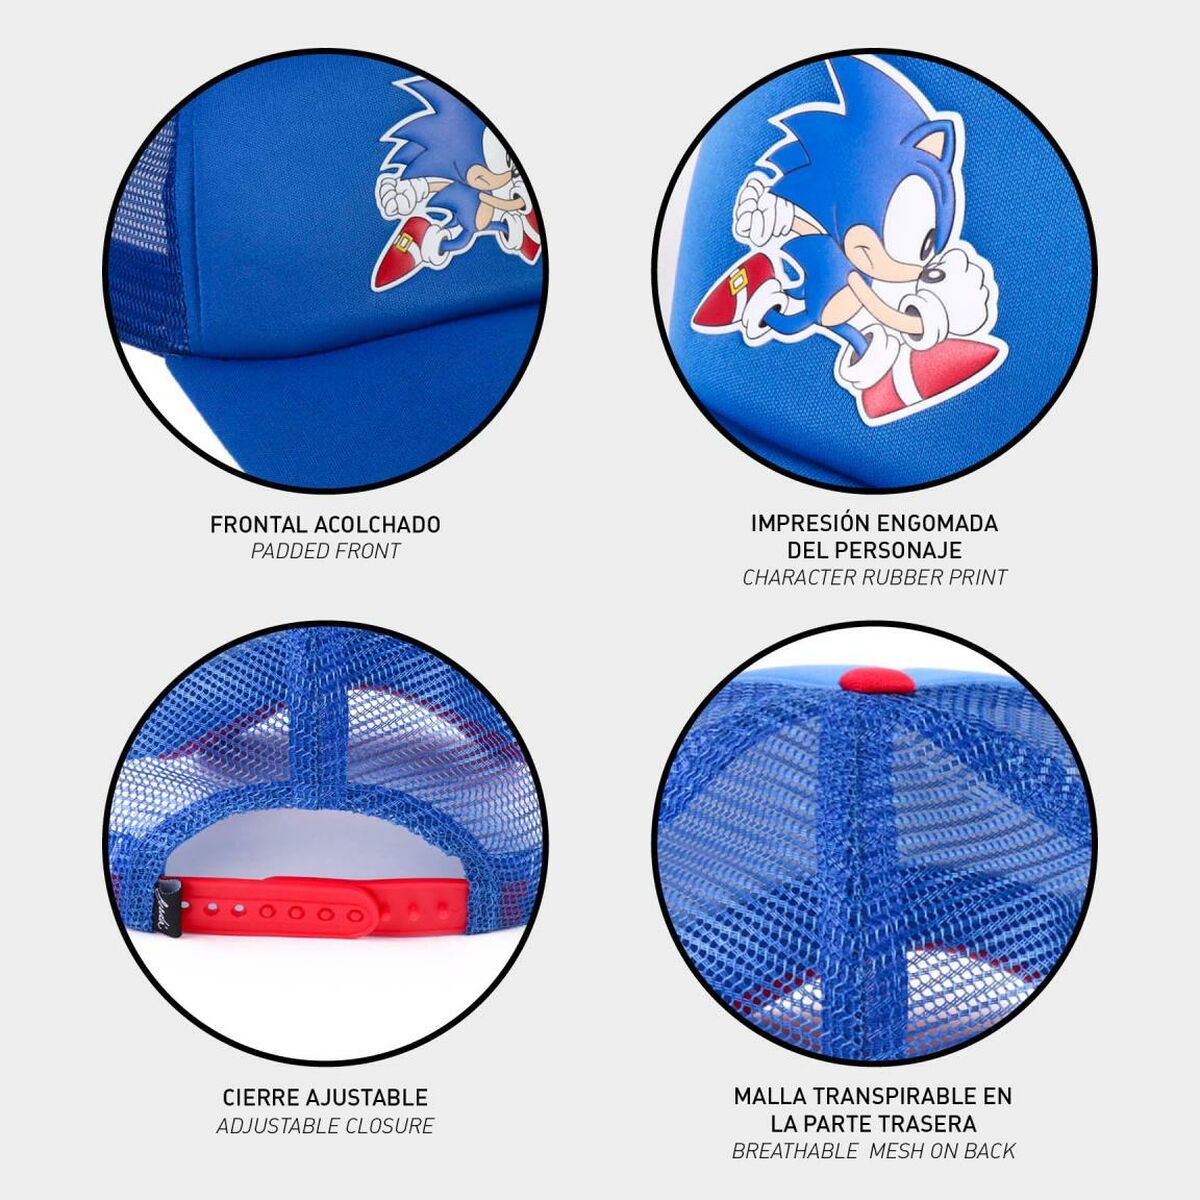 Cappellino per Bambini Sonic Azzurro (55 cm)